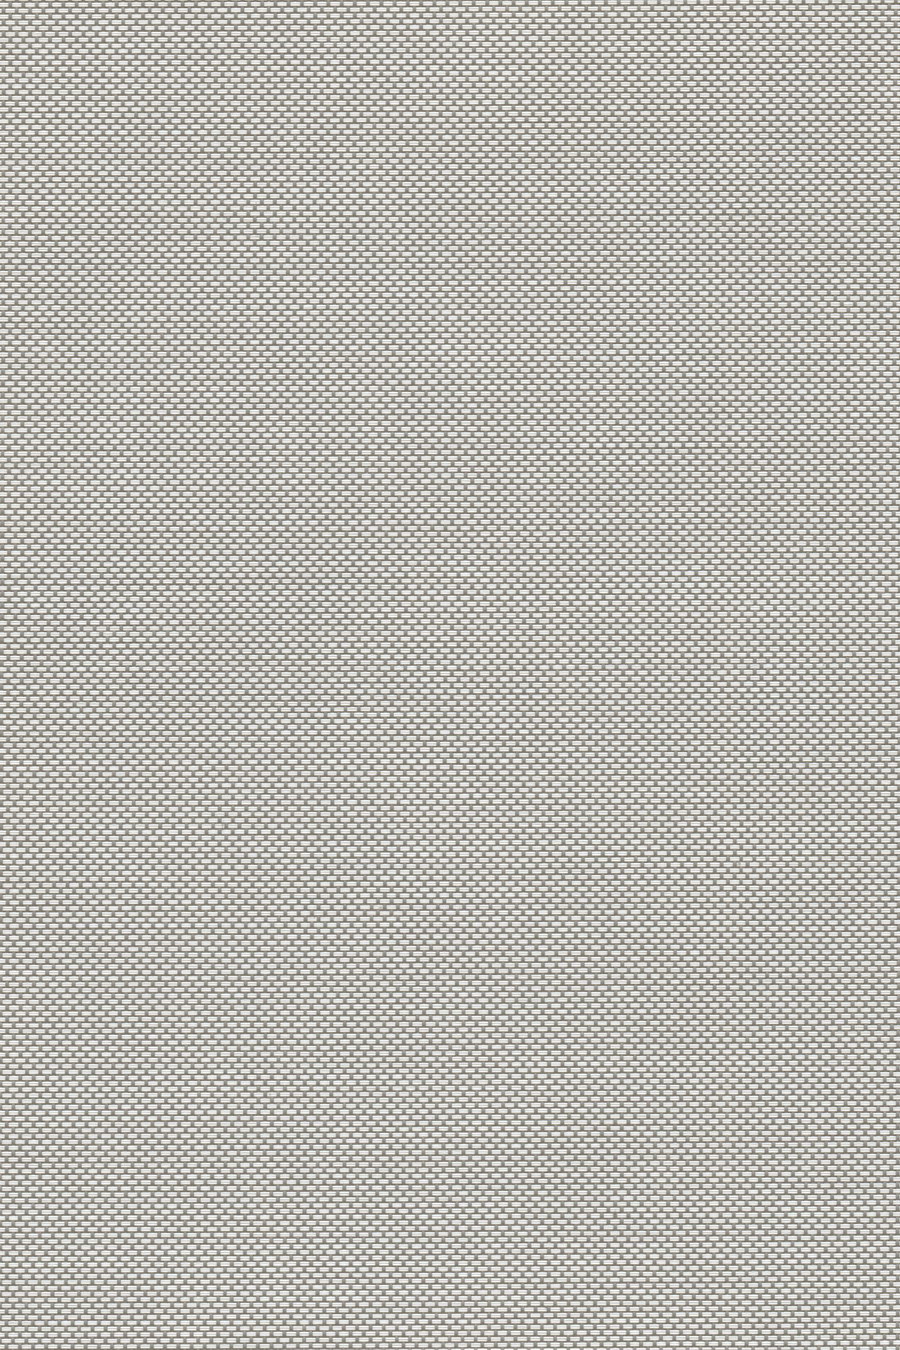 Ткань SCREEN светло-серый 5% 1078-3 для рольштор